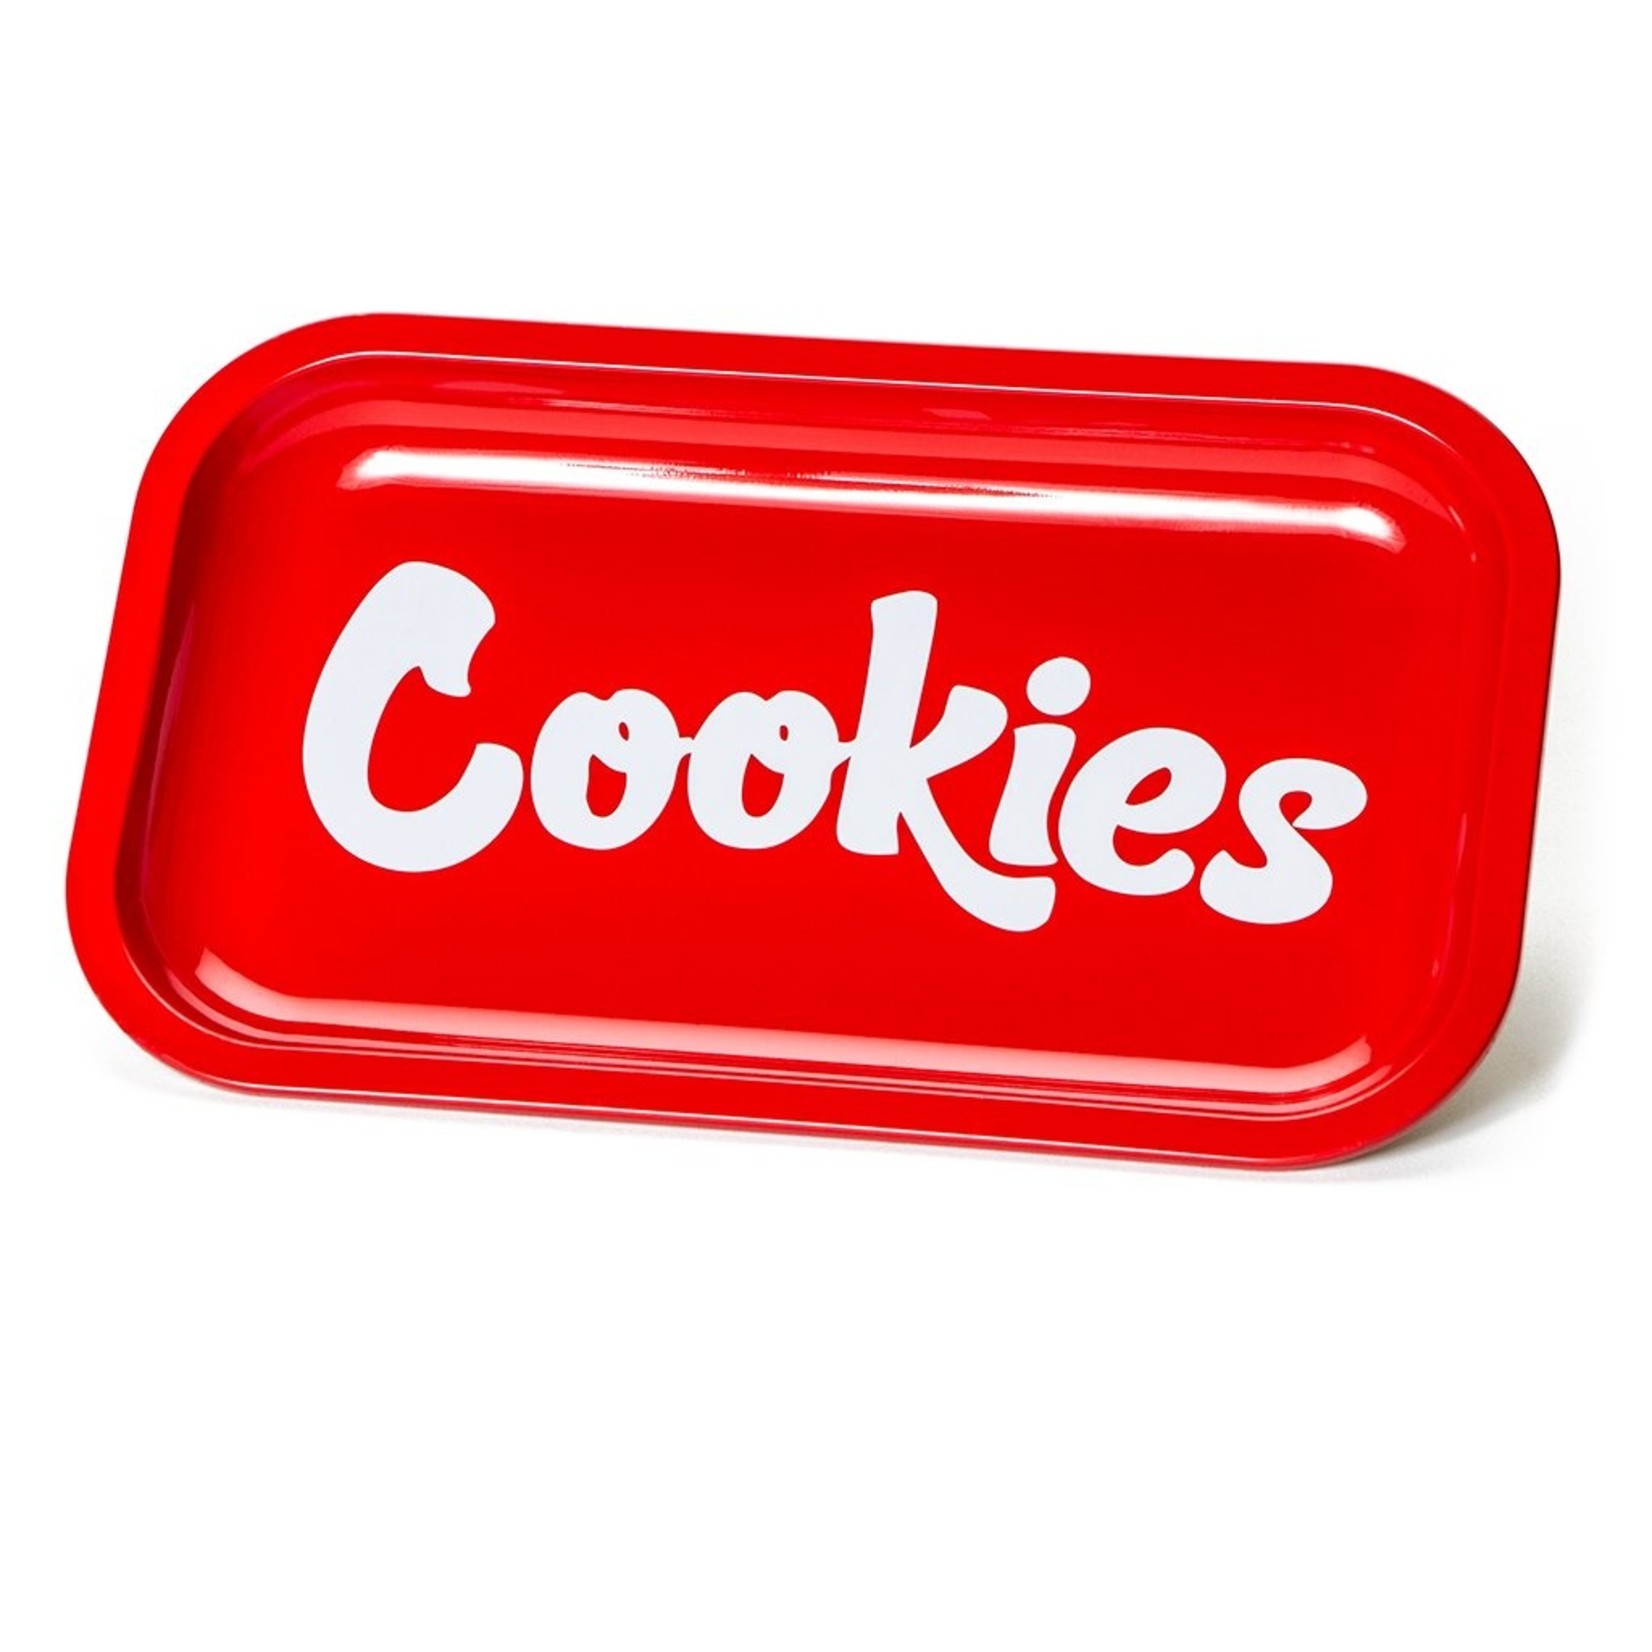 Cookies Cookies Red Metal Rolling Tray